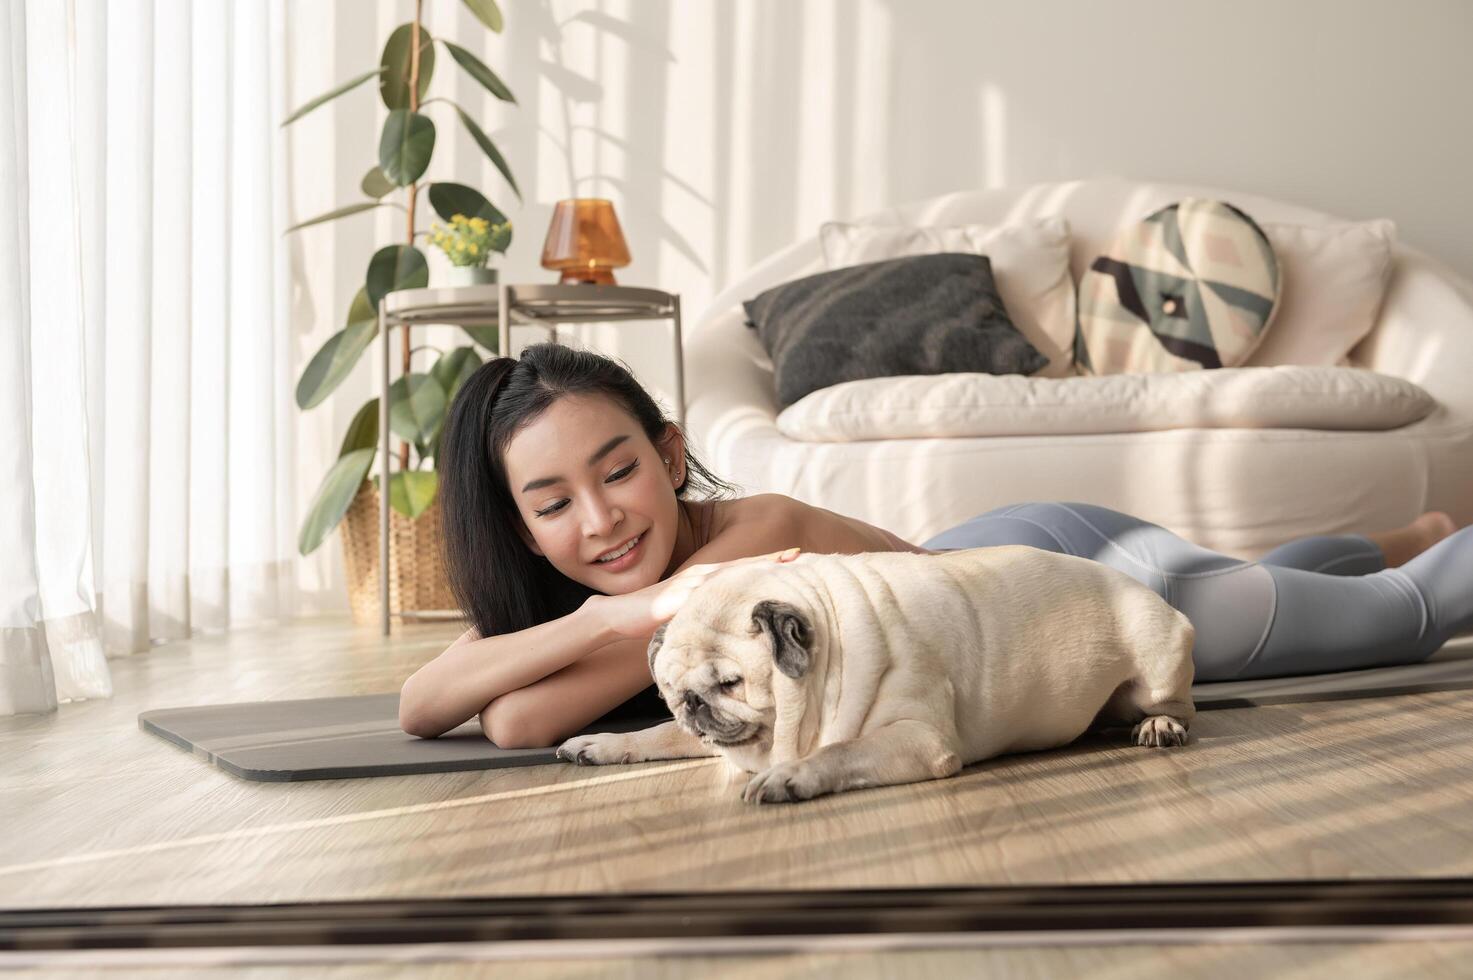 ásia mulher dentro roupa de esporte exercício e fazendo ioga com fofa cachorro dentro vivo quarto às lar, saudável estilo de vida, mental saúde conceito. foto